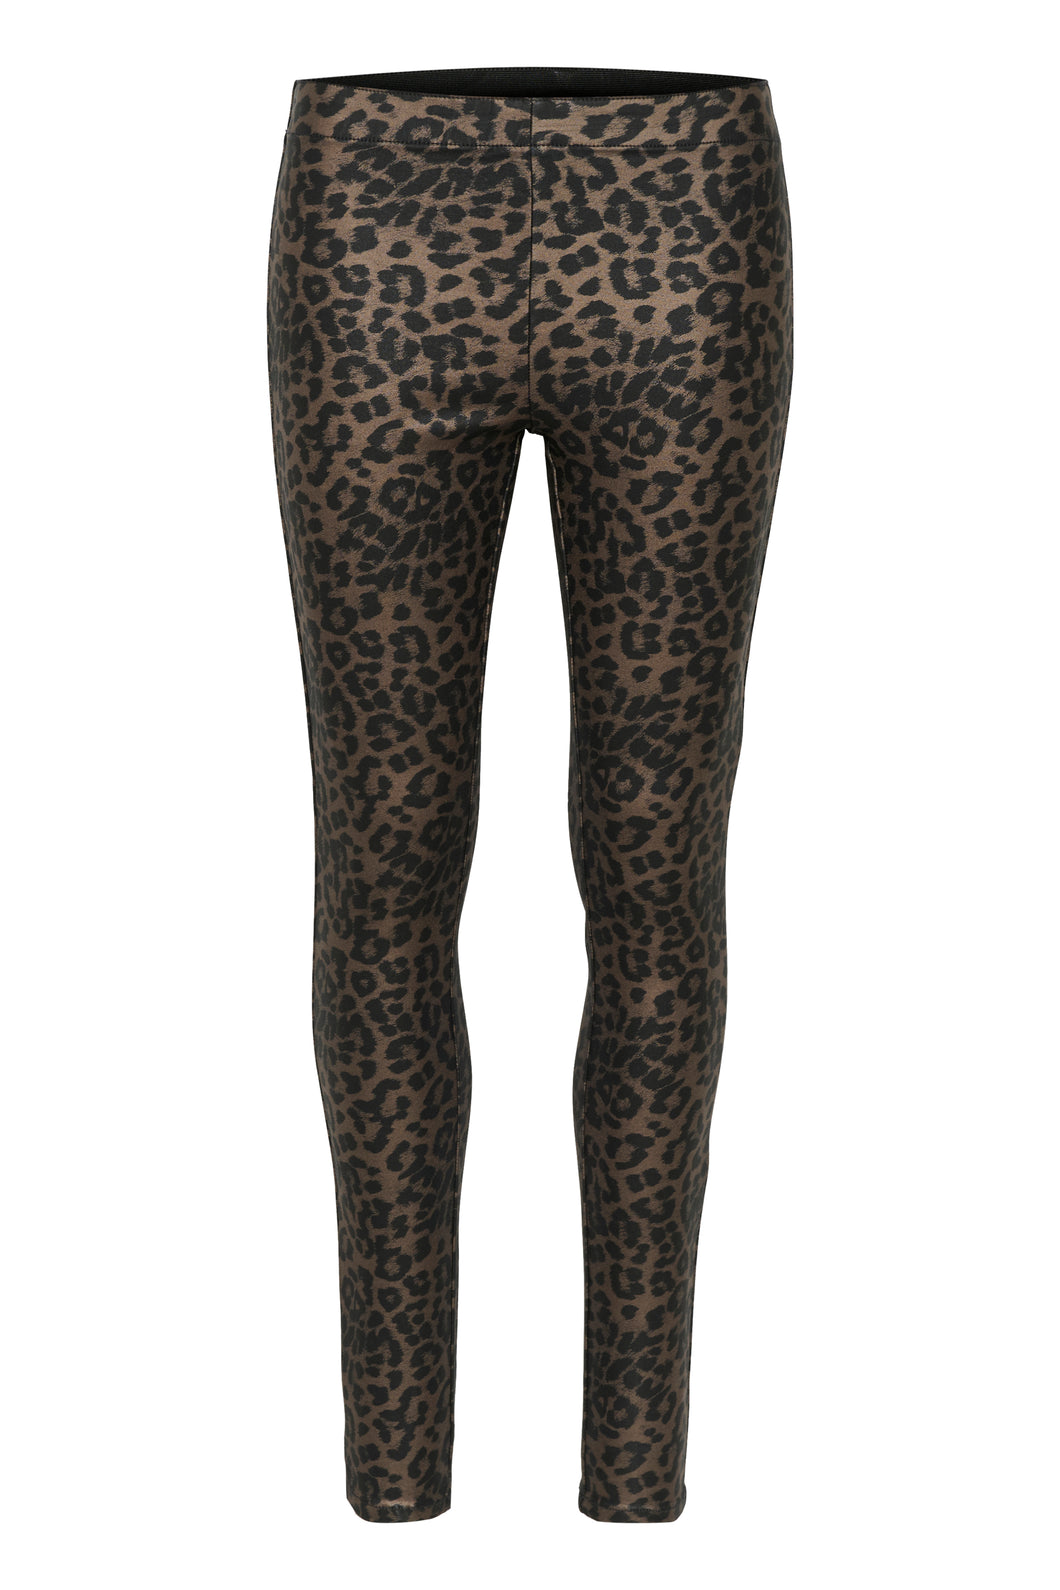 Culture - Bettine leggings - Leopard